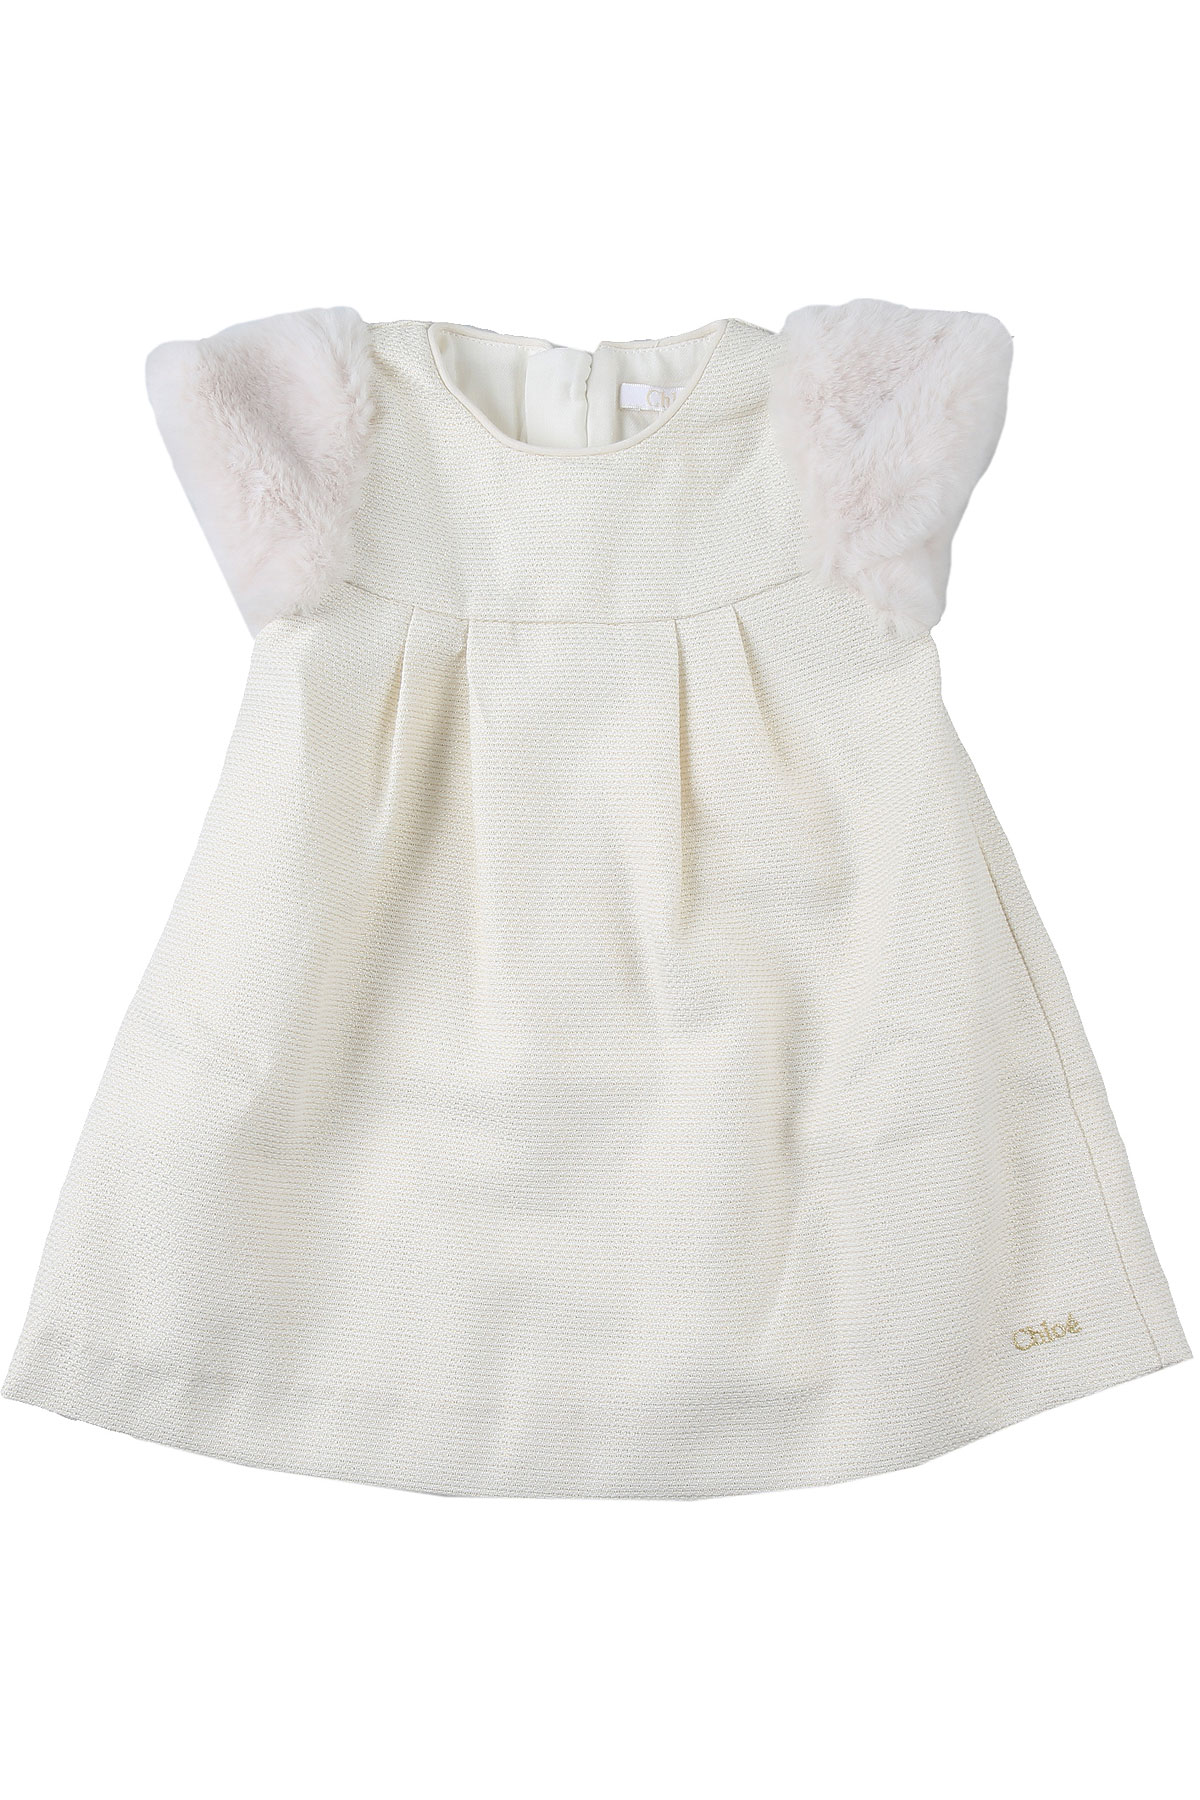 Chloe Baby Kleid für Mädchen Günstig im Sale, Milchfarben, Polyester, 2017, 12M 18M 3Y 6M